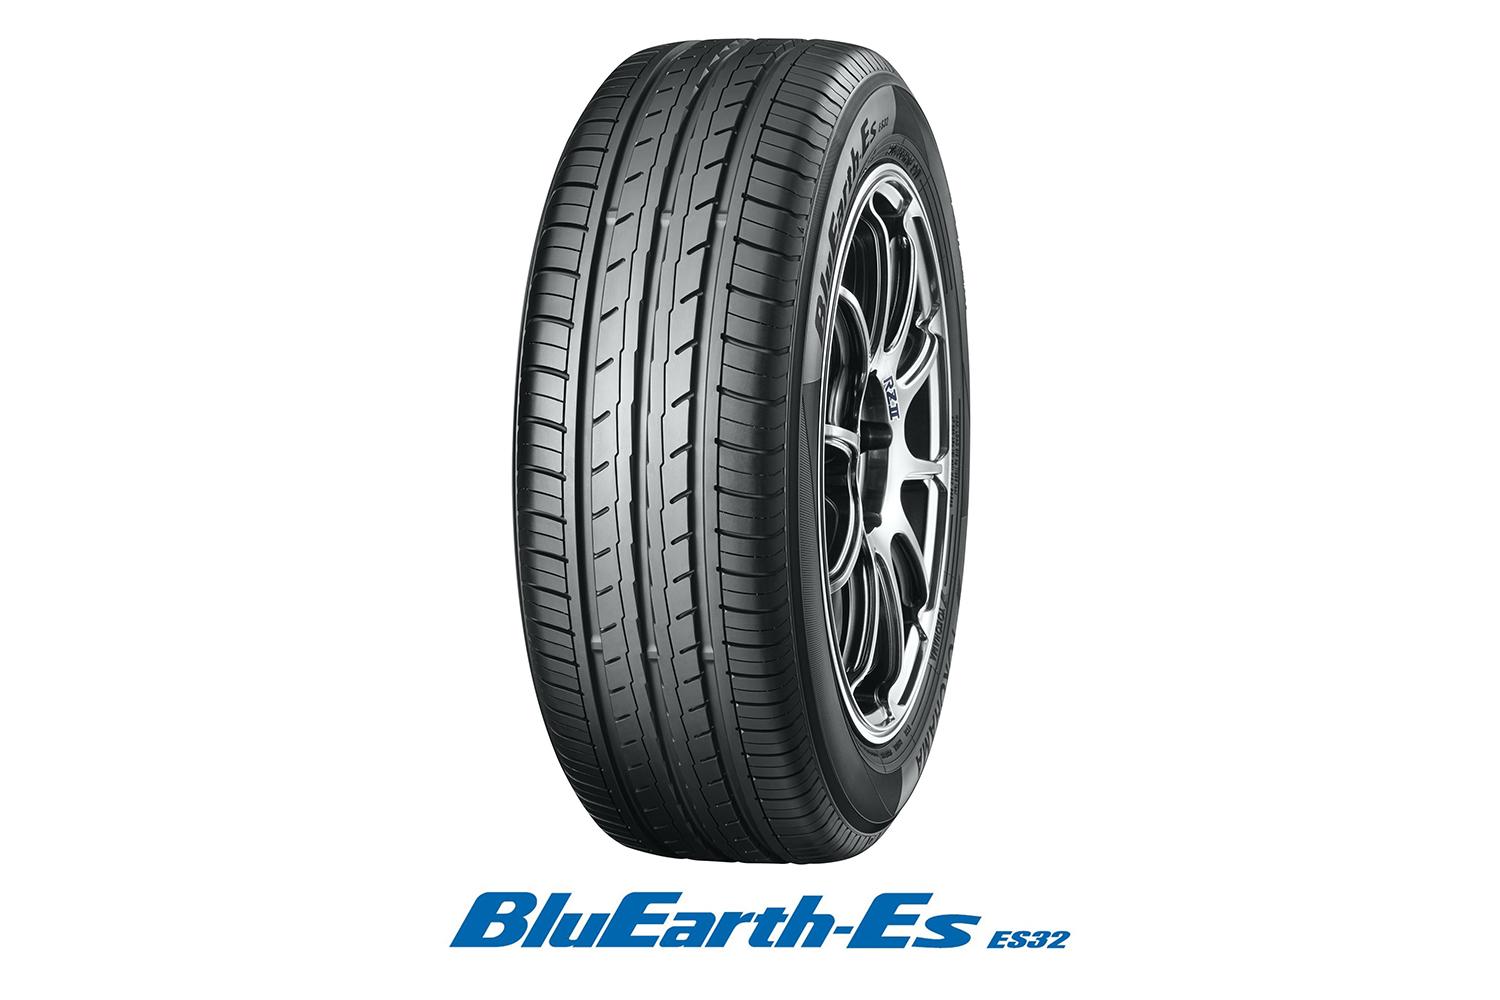 ヨコハマタイヤ「BluEarth-Es ES32」の全体